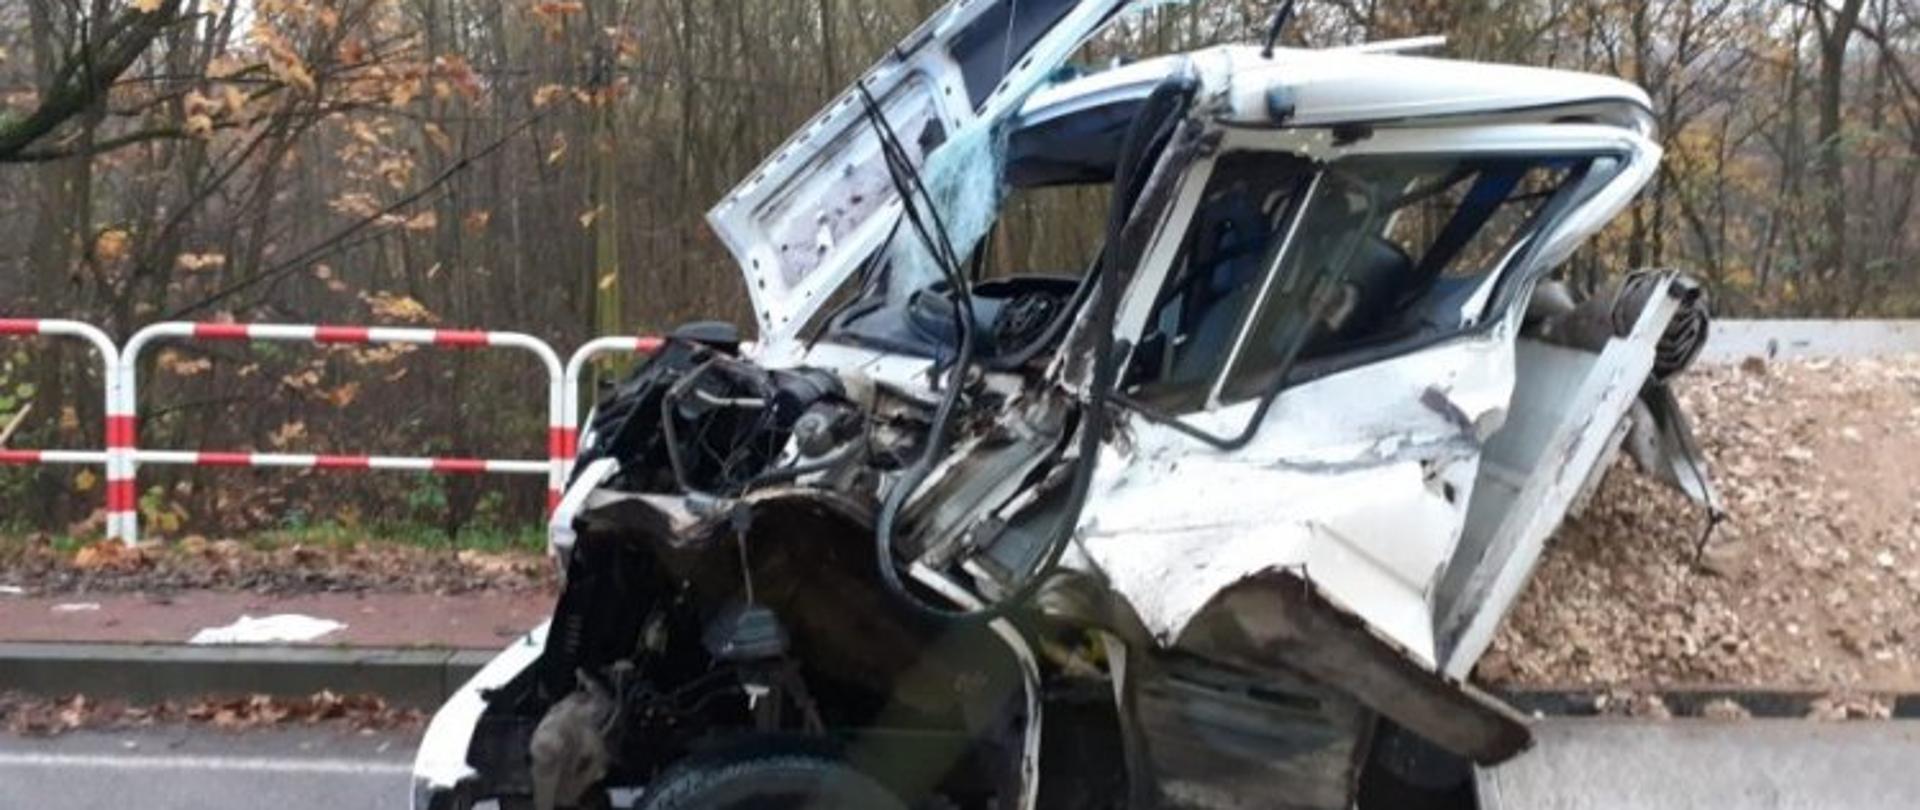 Zdjęcie przedstawia zniszczony samochód dostawczy. Zmiażdżona kabina kierowcy. Samochód przewoził żwir.